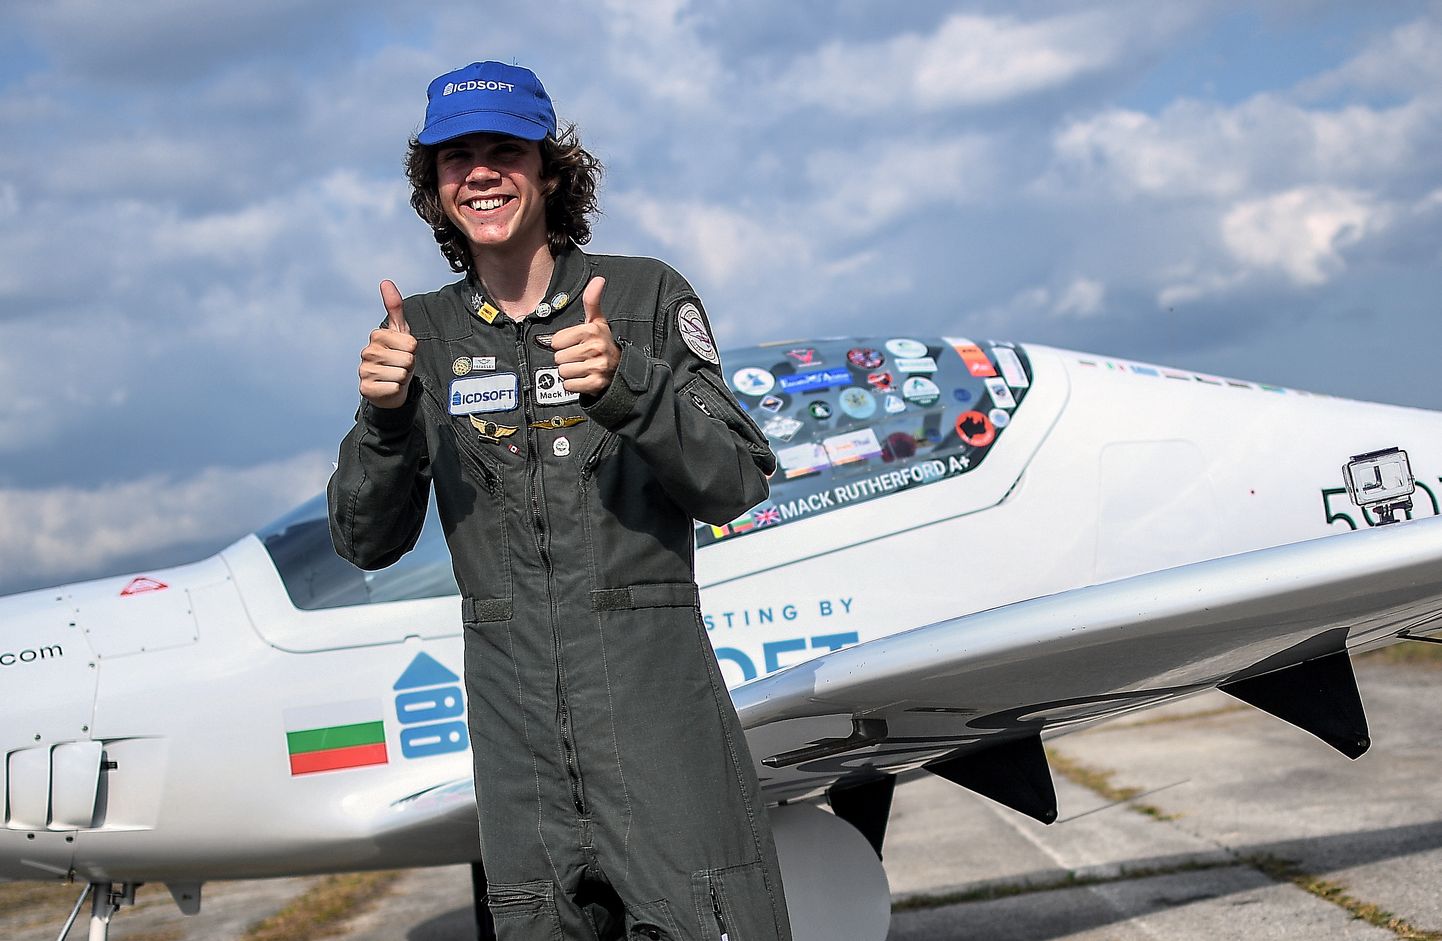 Briti-Belgia päritolu 17-aastane Mack Rutherford on noorim üksinda ümber maailma lennanud inimene. Ta maandus 24. augustil 2022 Bulgaarias Sofia-lähedasel lennuväljal, kust ta 23. märtsil 2022 teekonda alustas